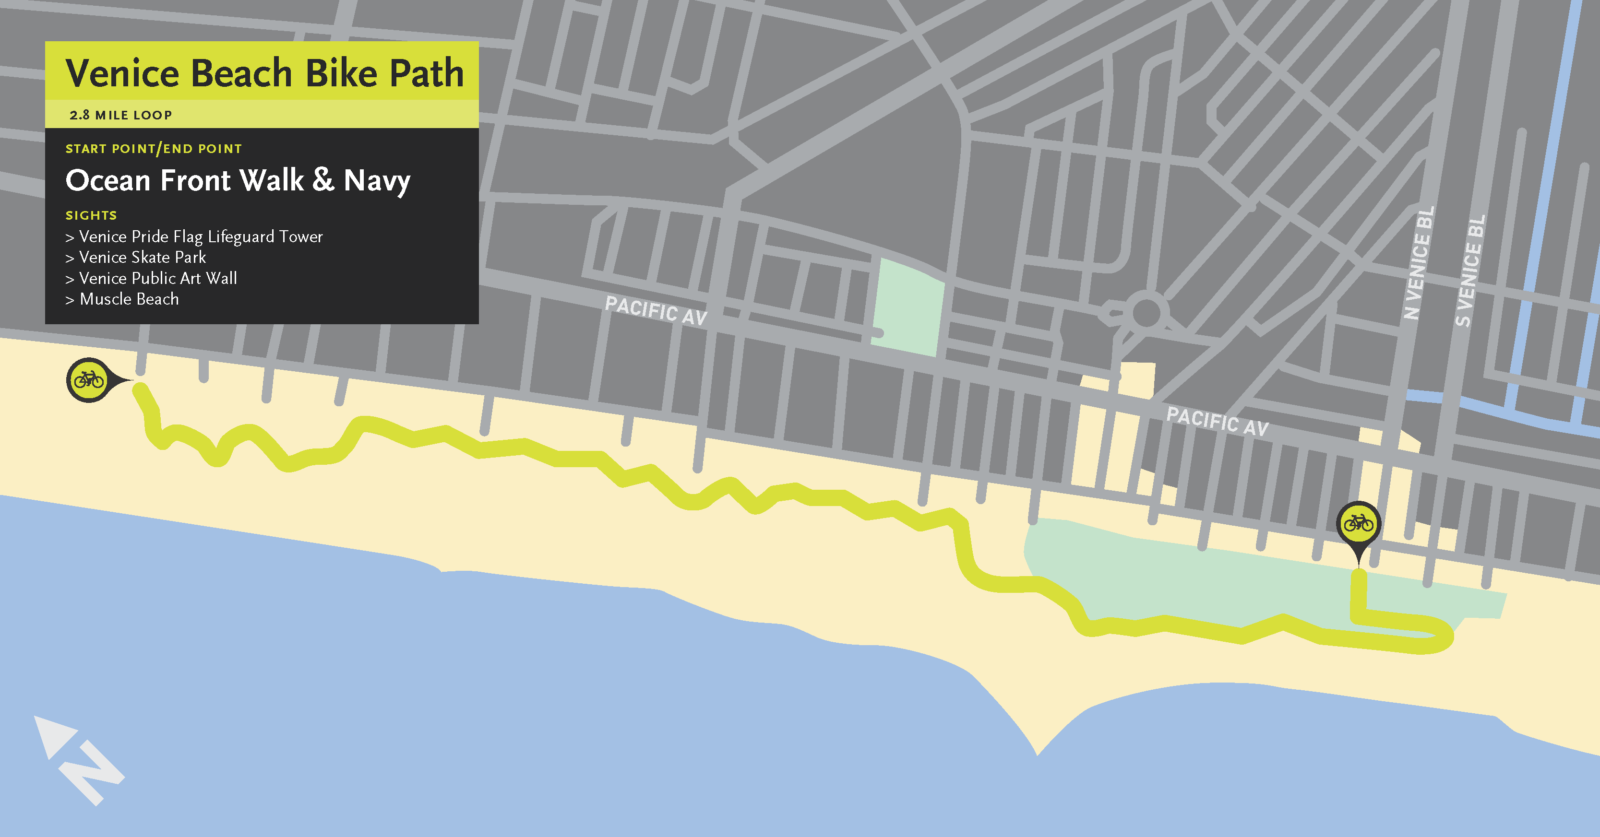 Venice Beach Bike Path Ride Guide